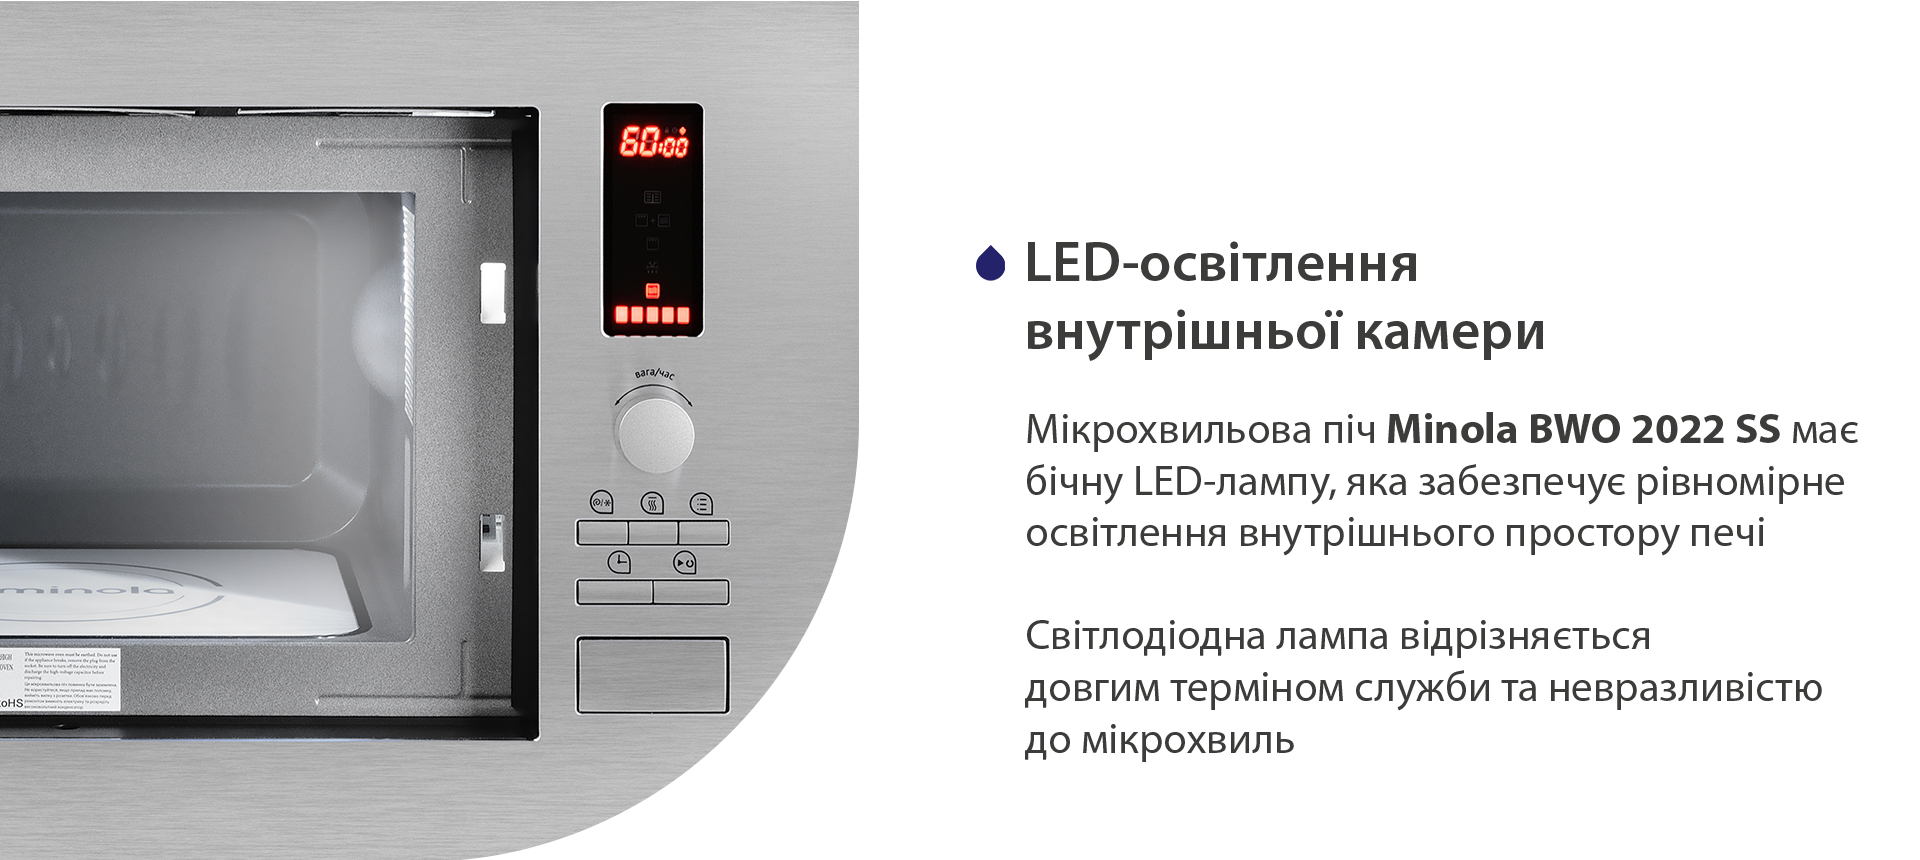 Мікрохвильова піч Minola BWO 2022 SS має бічну LED-лампу, яка забезпечує рівномірне освітлення страв на біокерамічній панелі. Світлодіодна лампа відрізняється довгим терміном служби та сумсністю з мікрохвилями